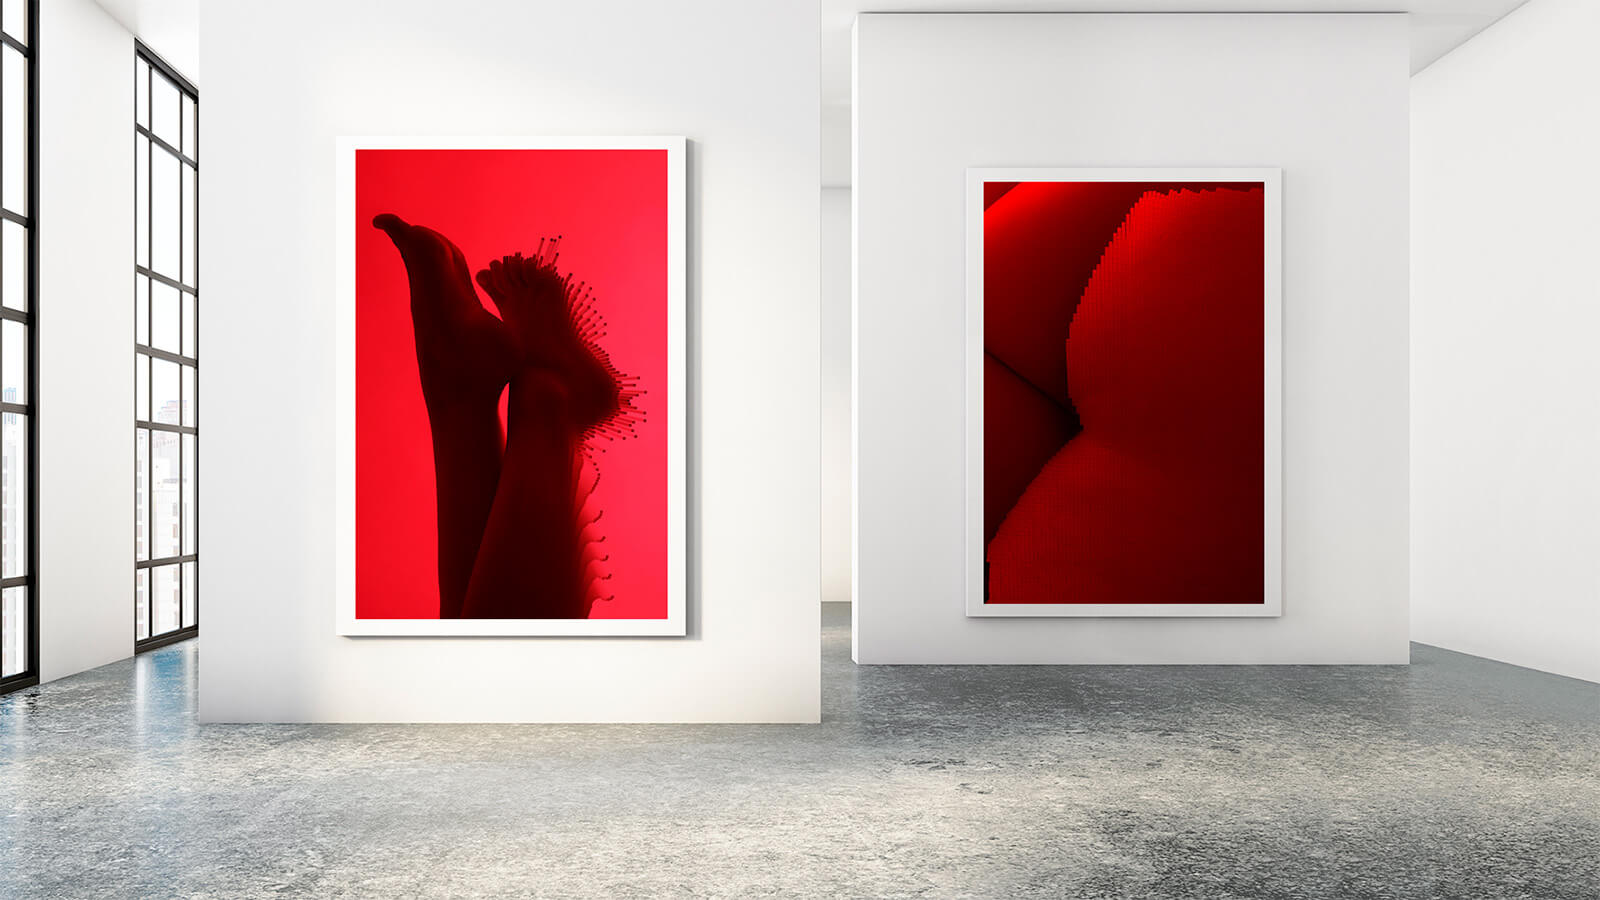 Sintora-alter-ego-Hummo-reconstruction-exhibition-Horno-Art-Virtual-Gallery-photography-feet-ass-1600x900